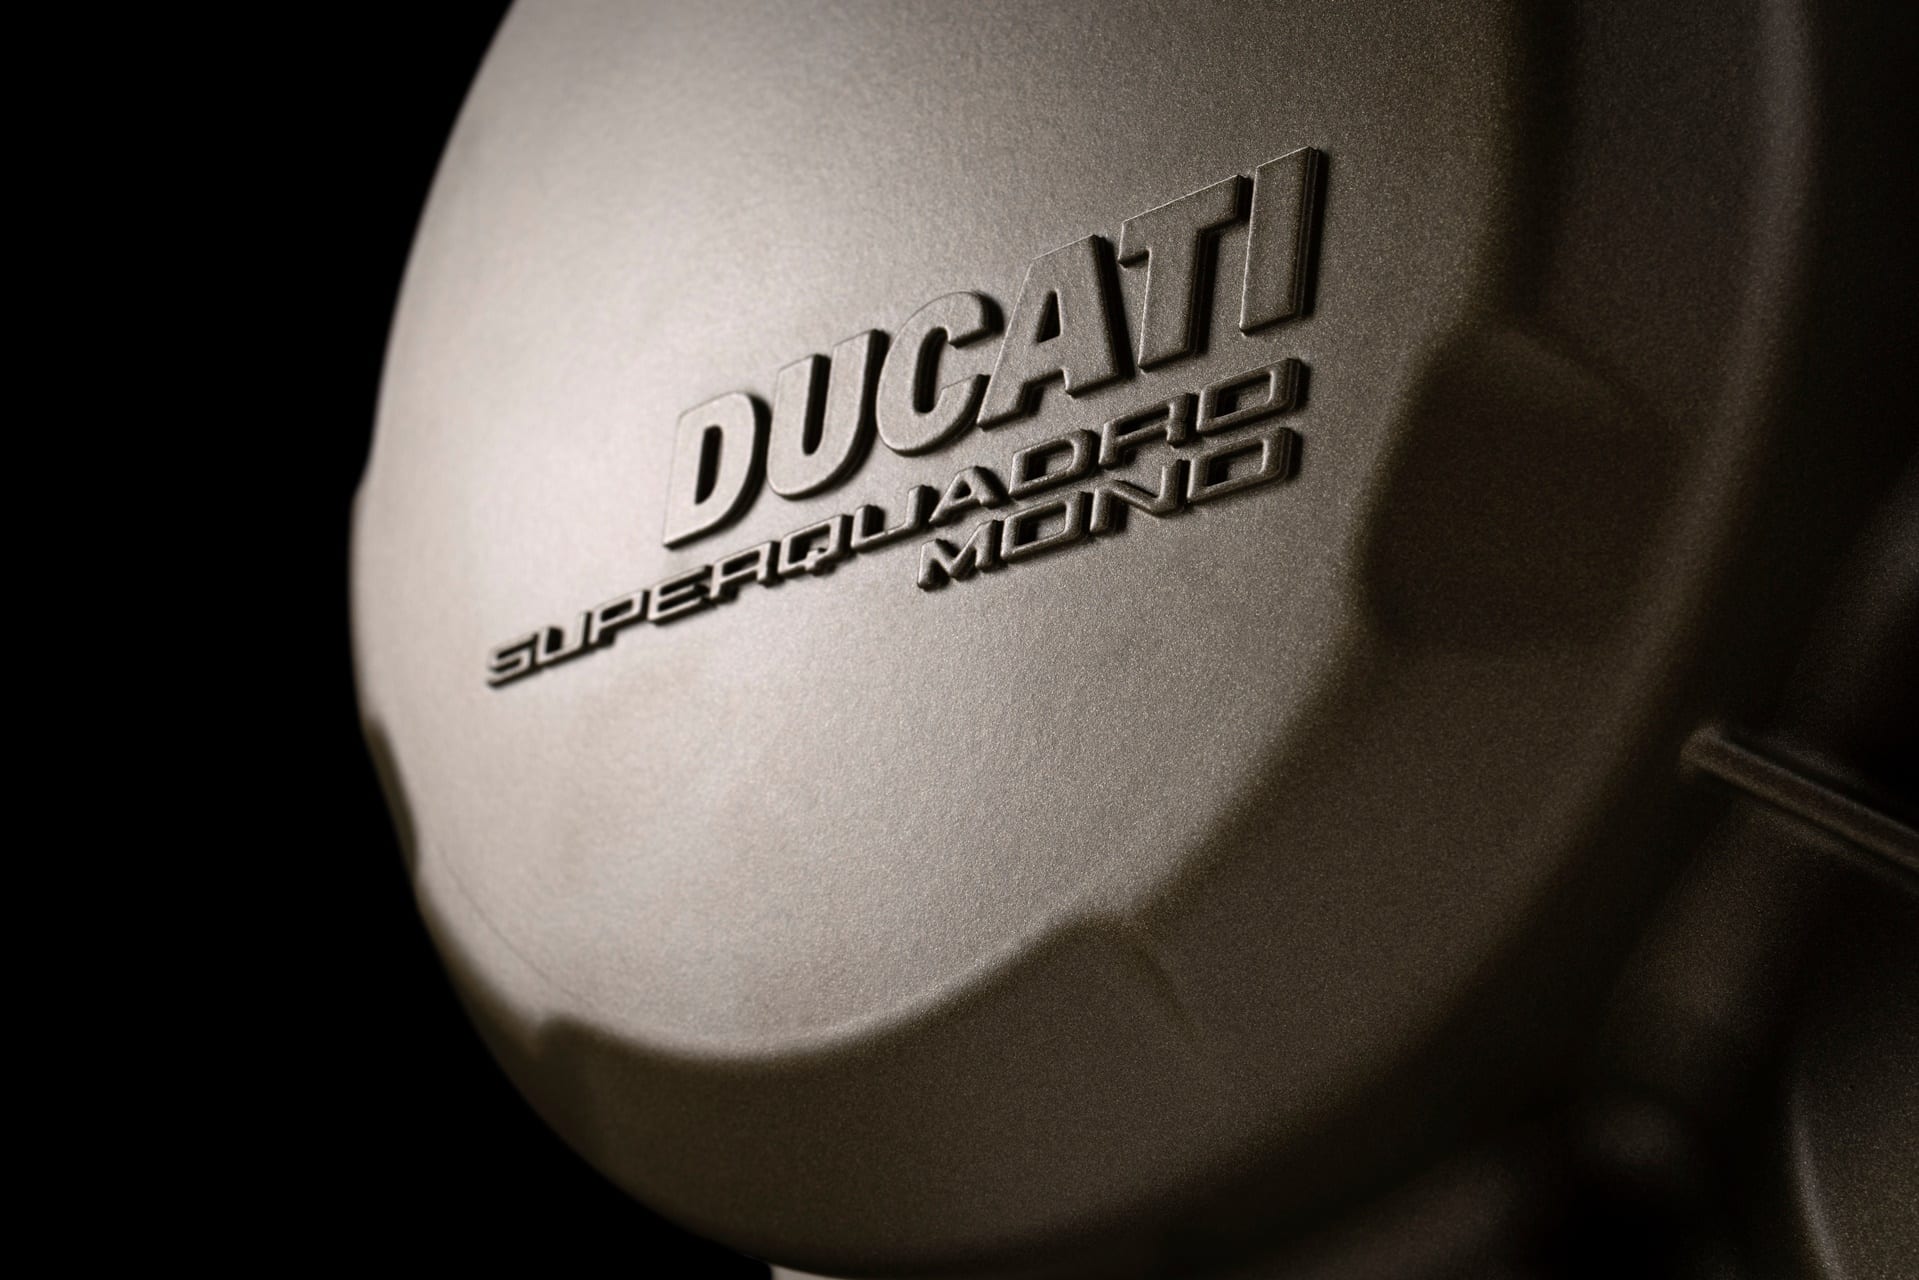 Superquadro Mono, el monocilíndrico de altas prestaciones que Ducati presentará el 6 de noviembre